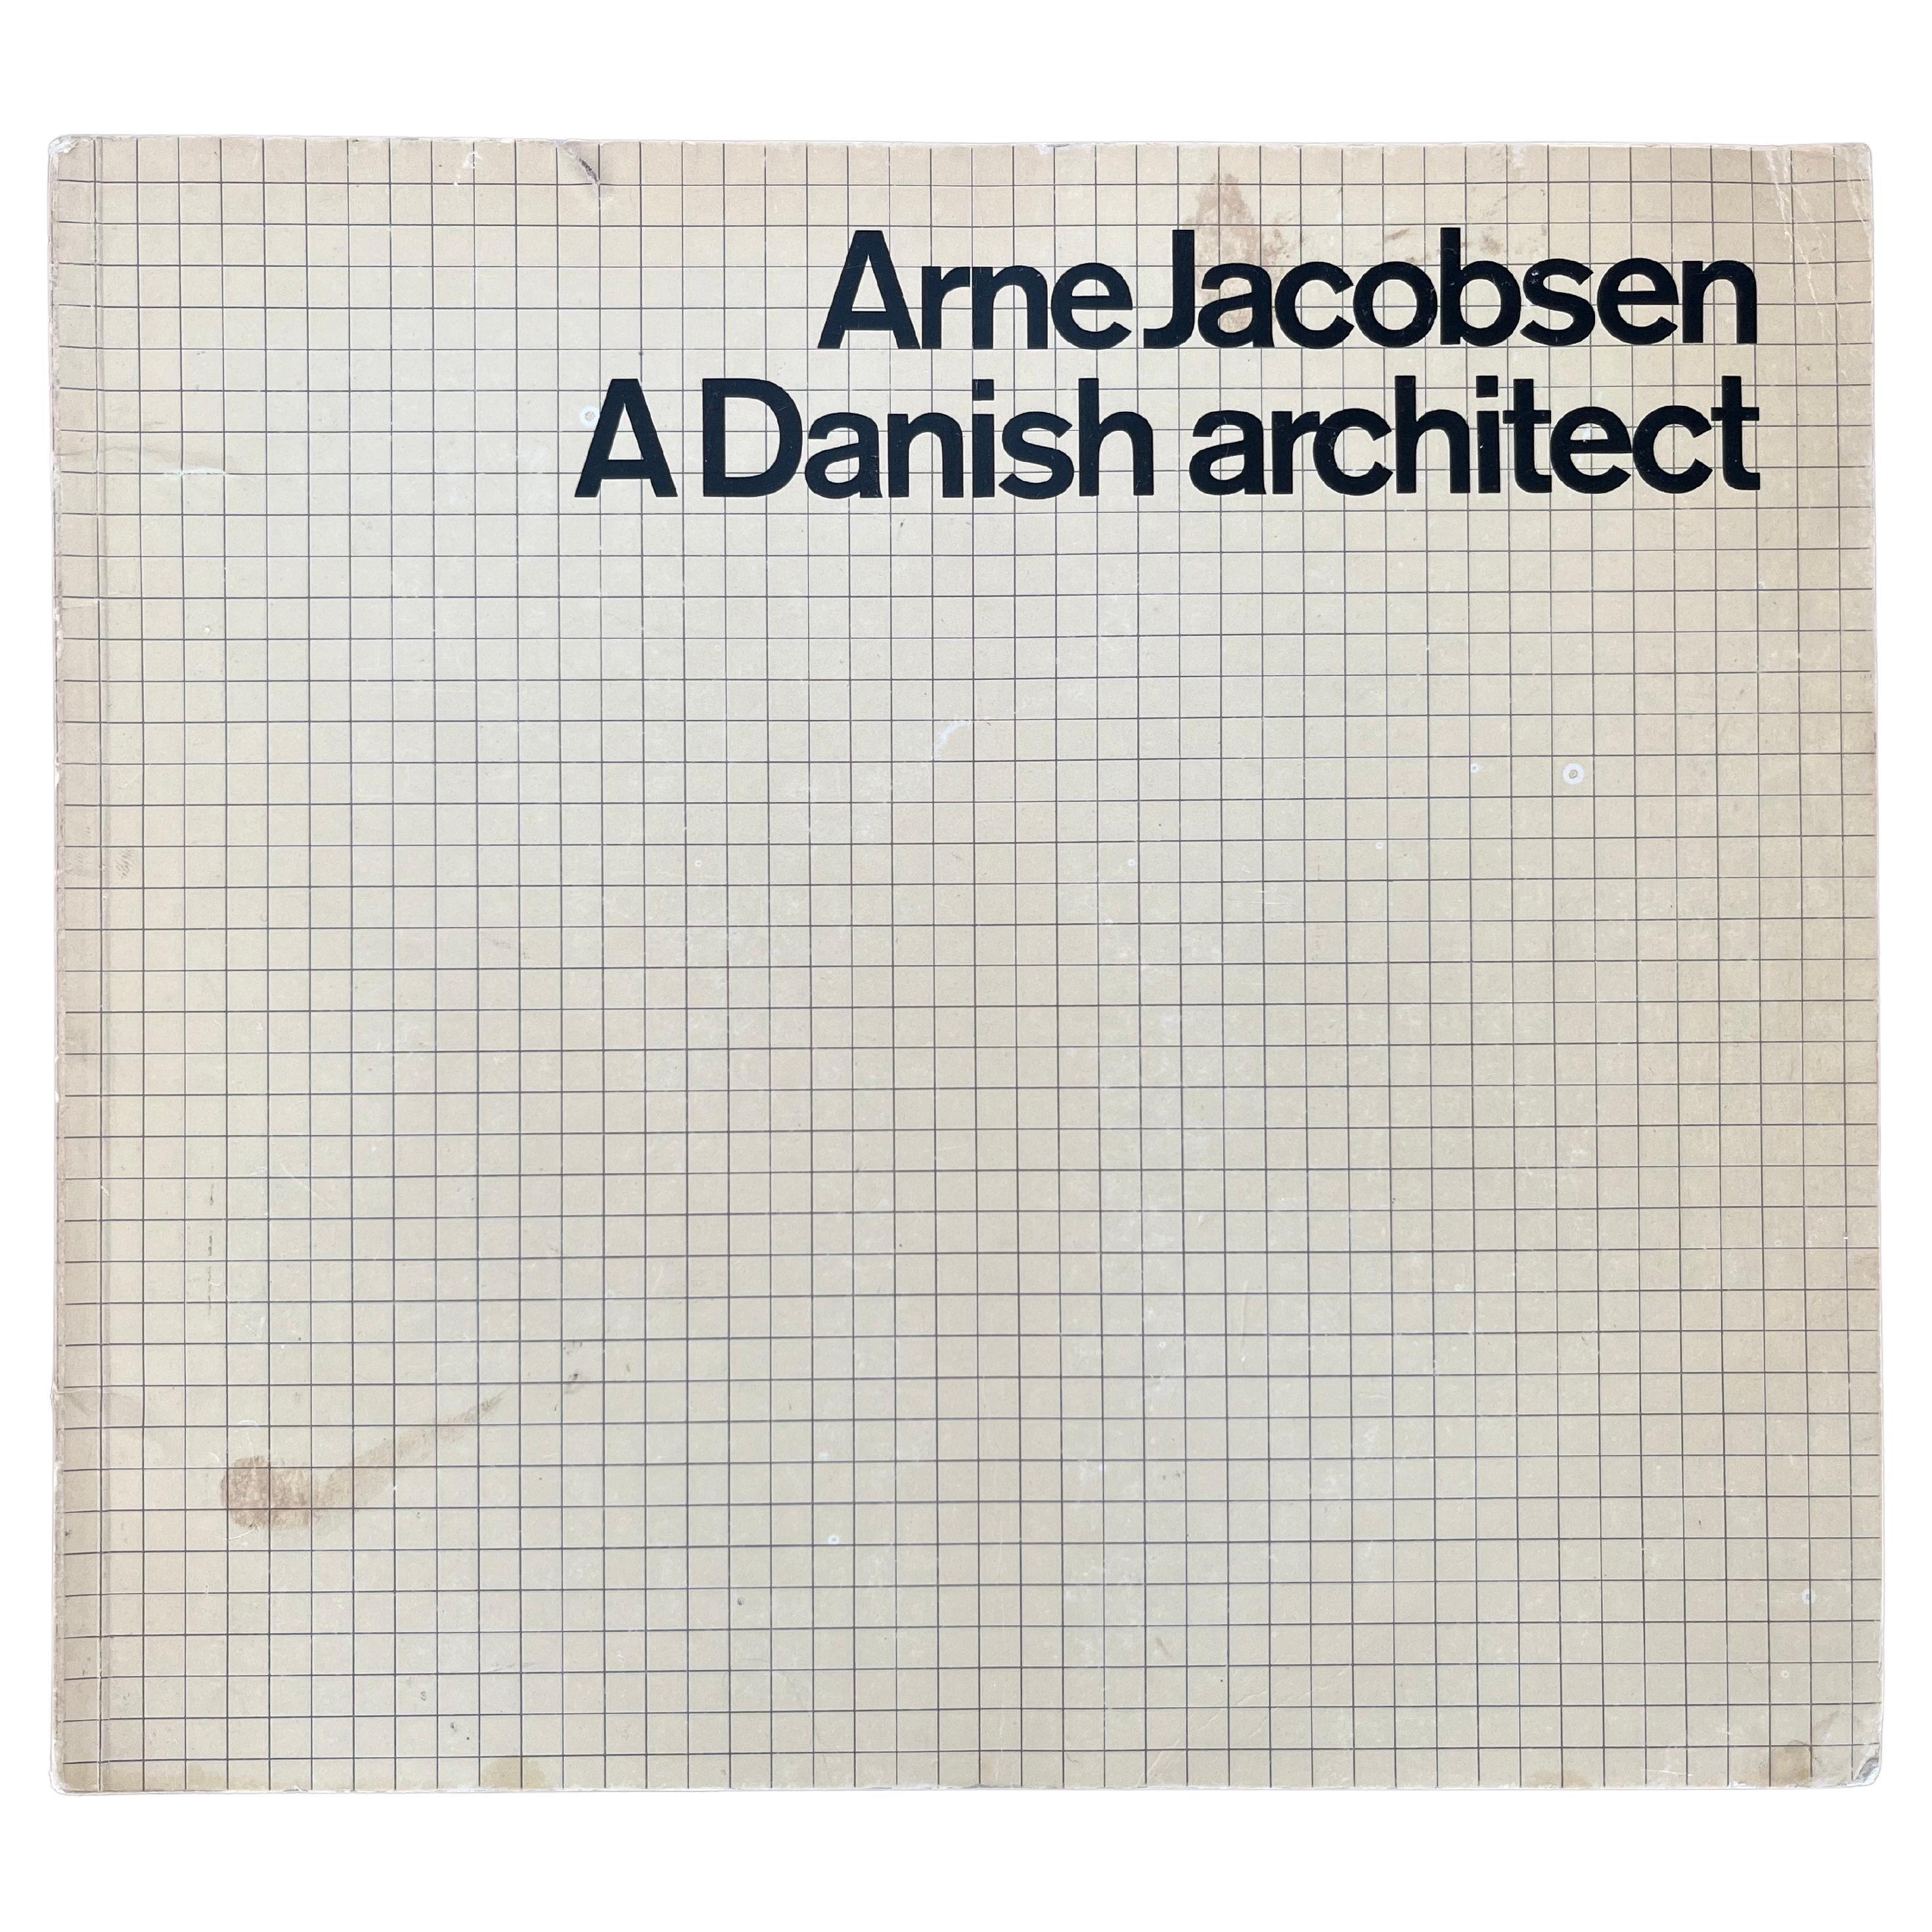 Arne Jacobsen, architecte danois, 1972